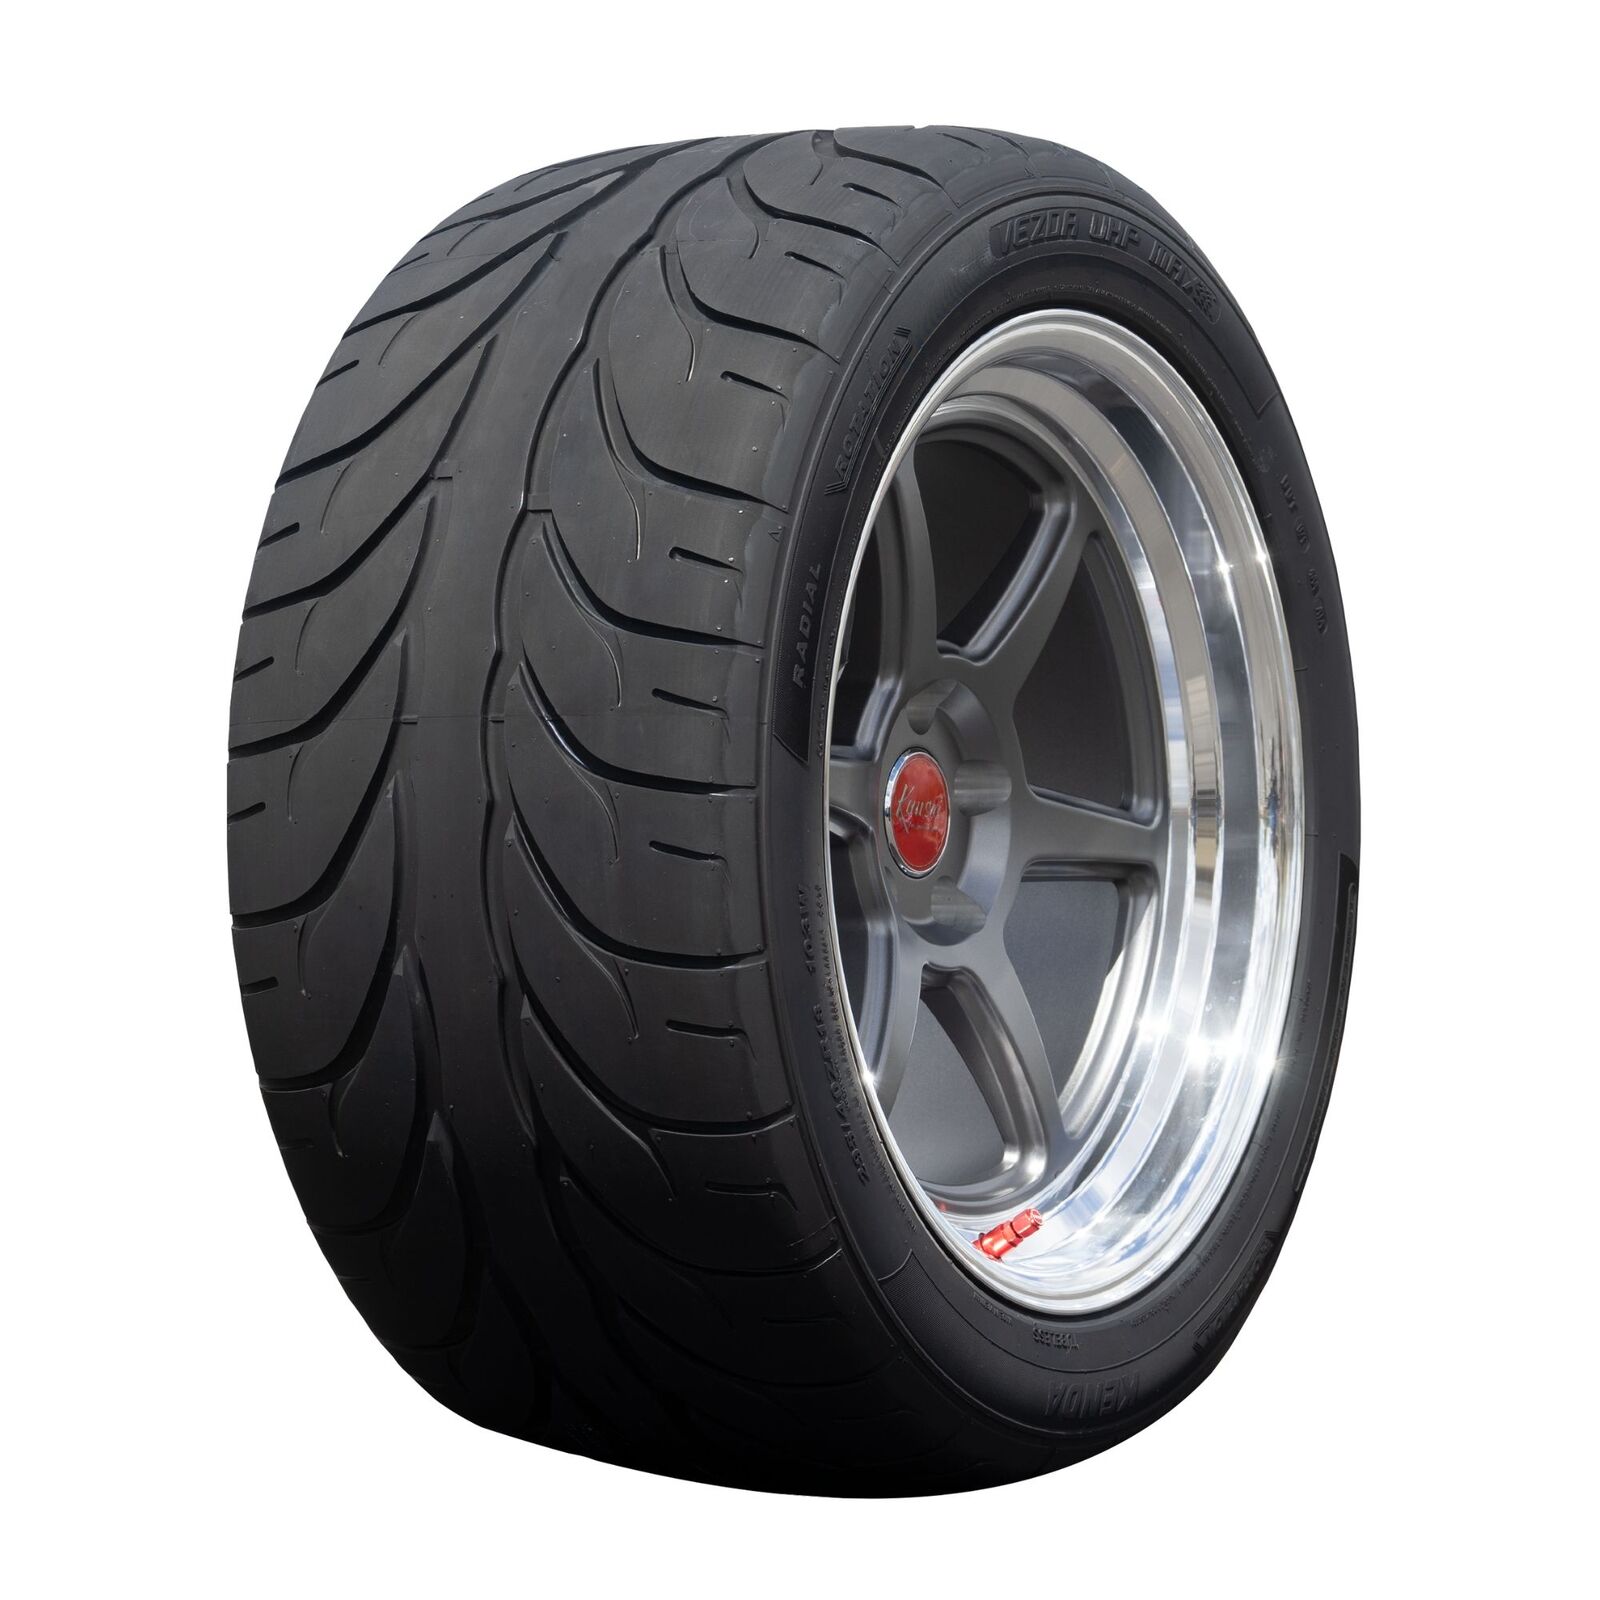 2 New Kenda Kaiser (kr20a)  - 255/35zr18 Tires 2553518 255 35 18